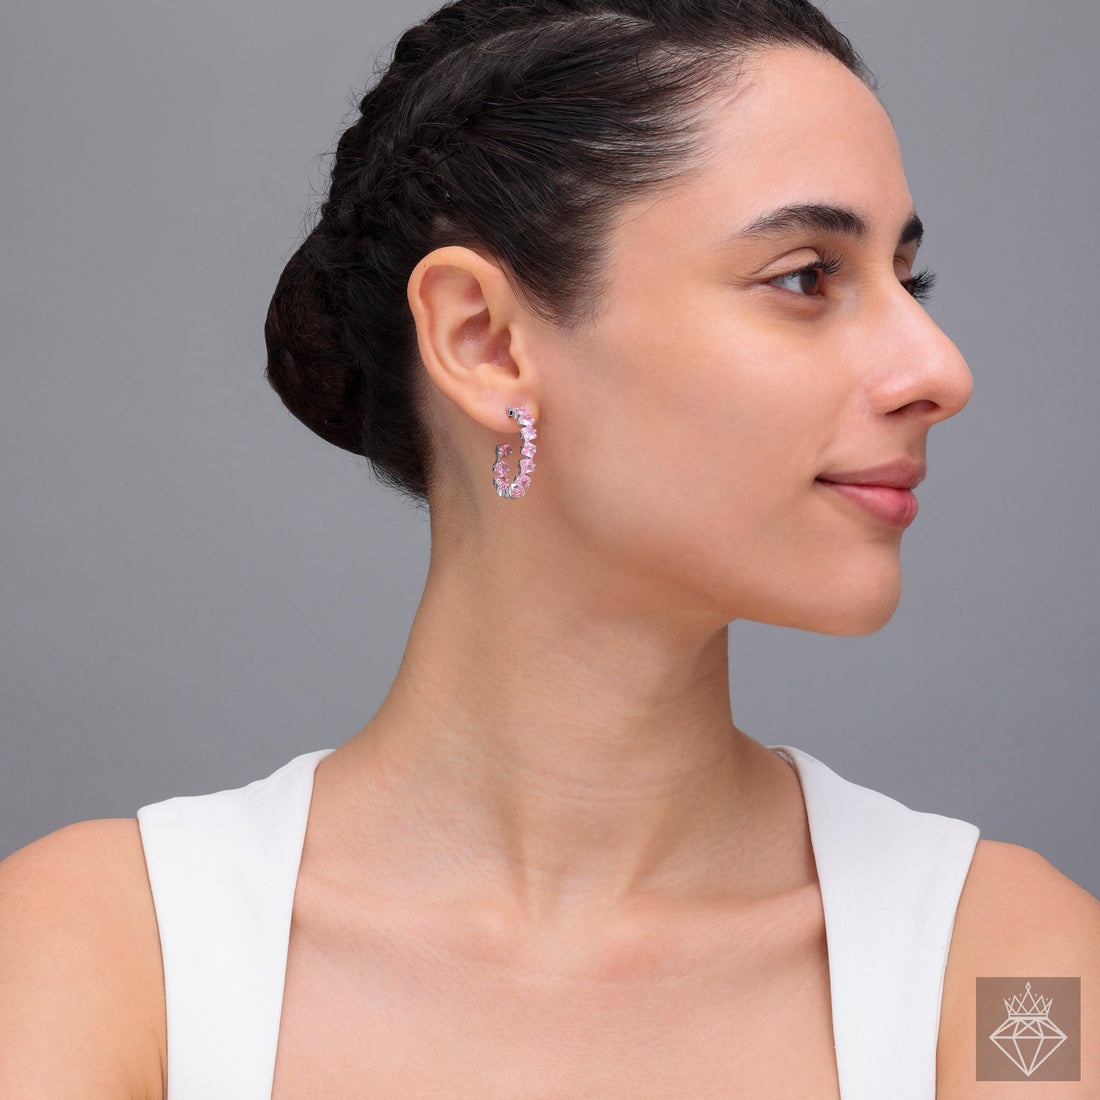 PRAO's Sparkling Princess-Cut Hoop Earrings